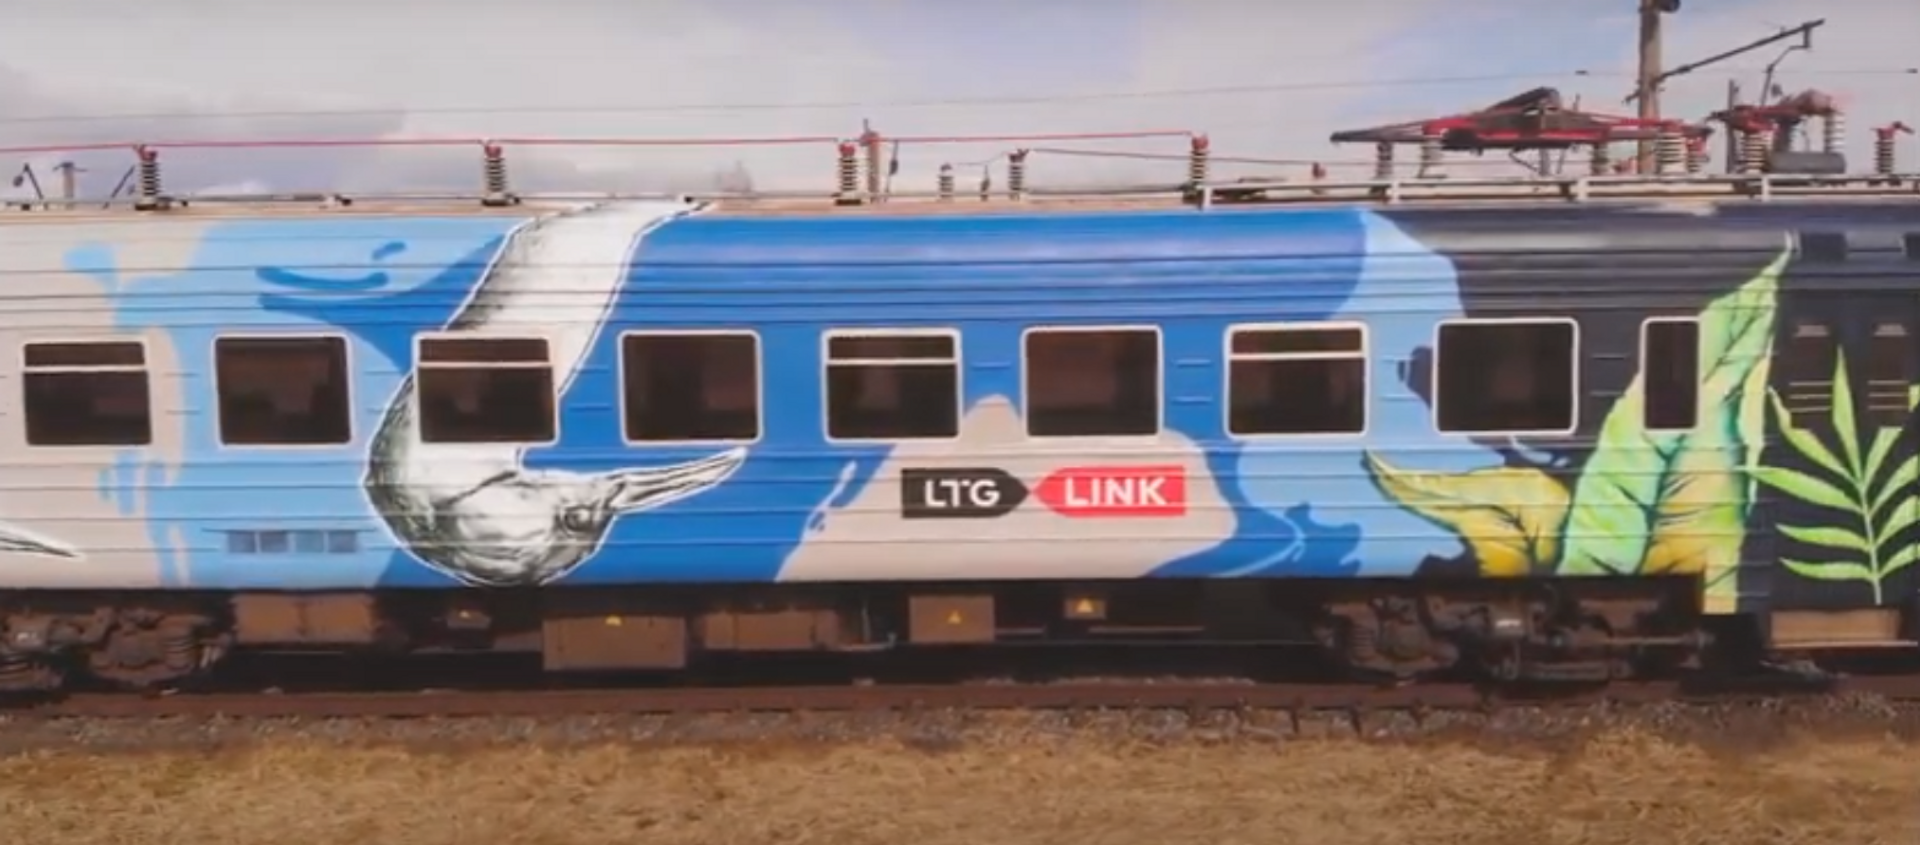 Vienas iš elektrinių traukinių Lietuvoje paverstas gamtos atspindžiu  - Sputnik Lietuva, 1920, 14.04.2021